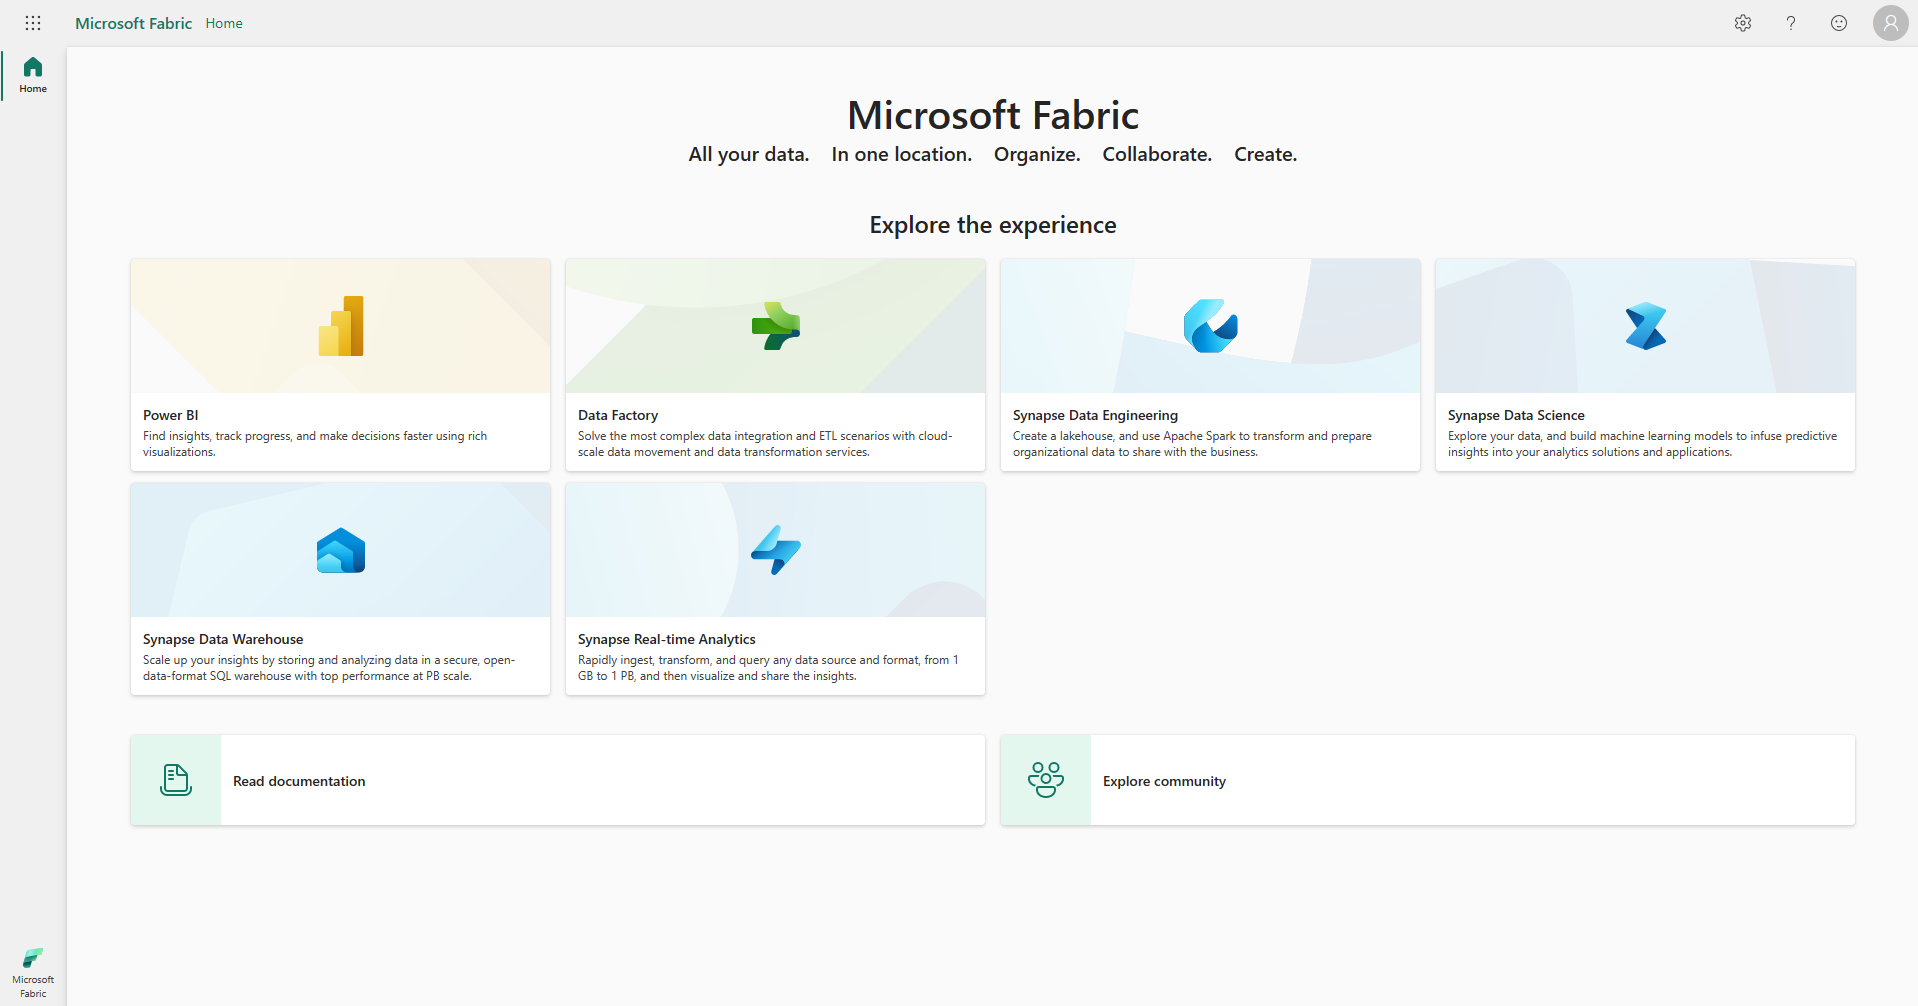 Zrzut ekranu przedstawiający stronę główną usługi Microsoft Fabric z menedżerem kont przedstawionym na czerwono.